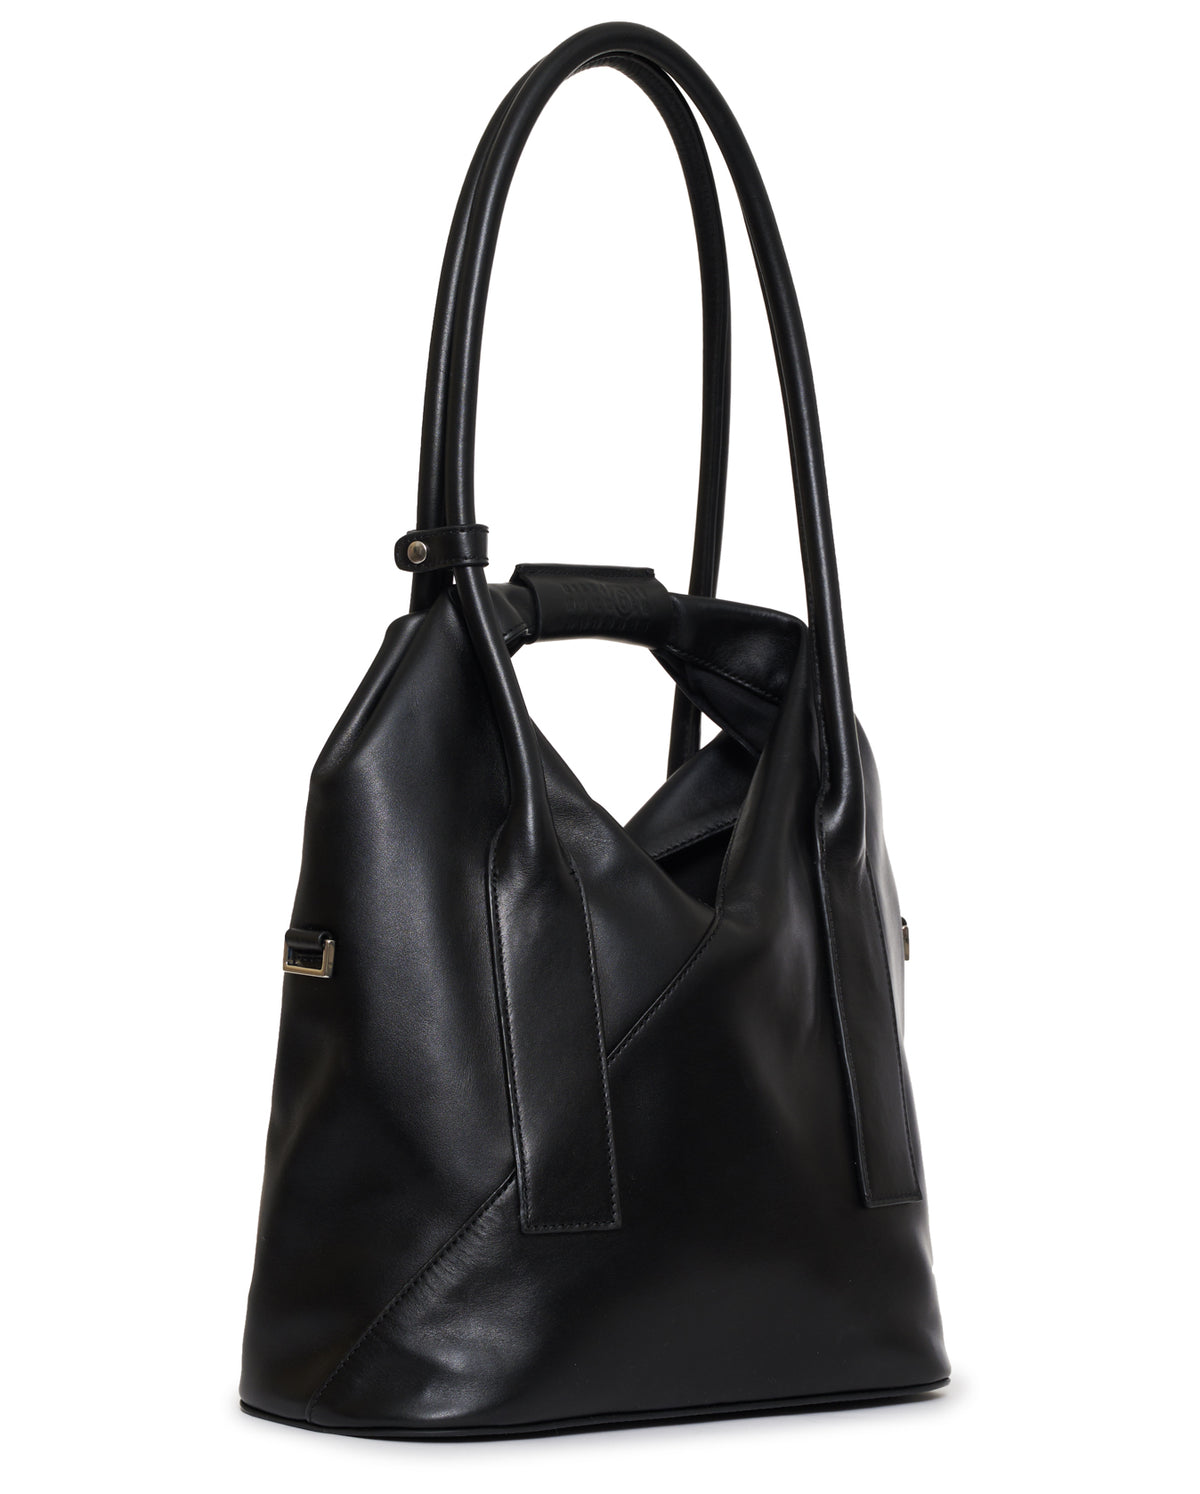 Japanese 3 Straps Handbag  - Black